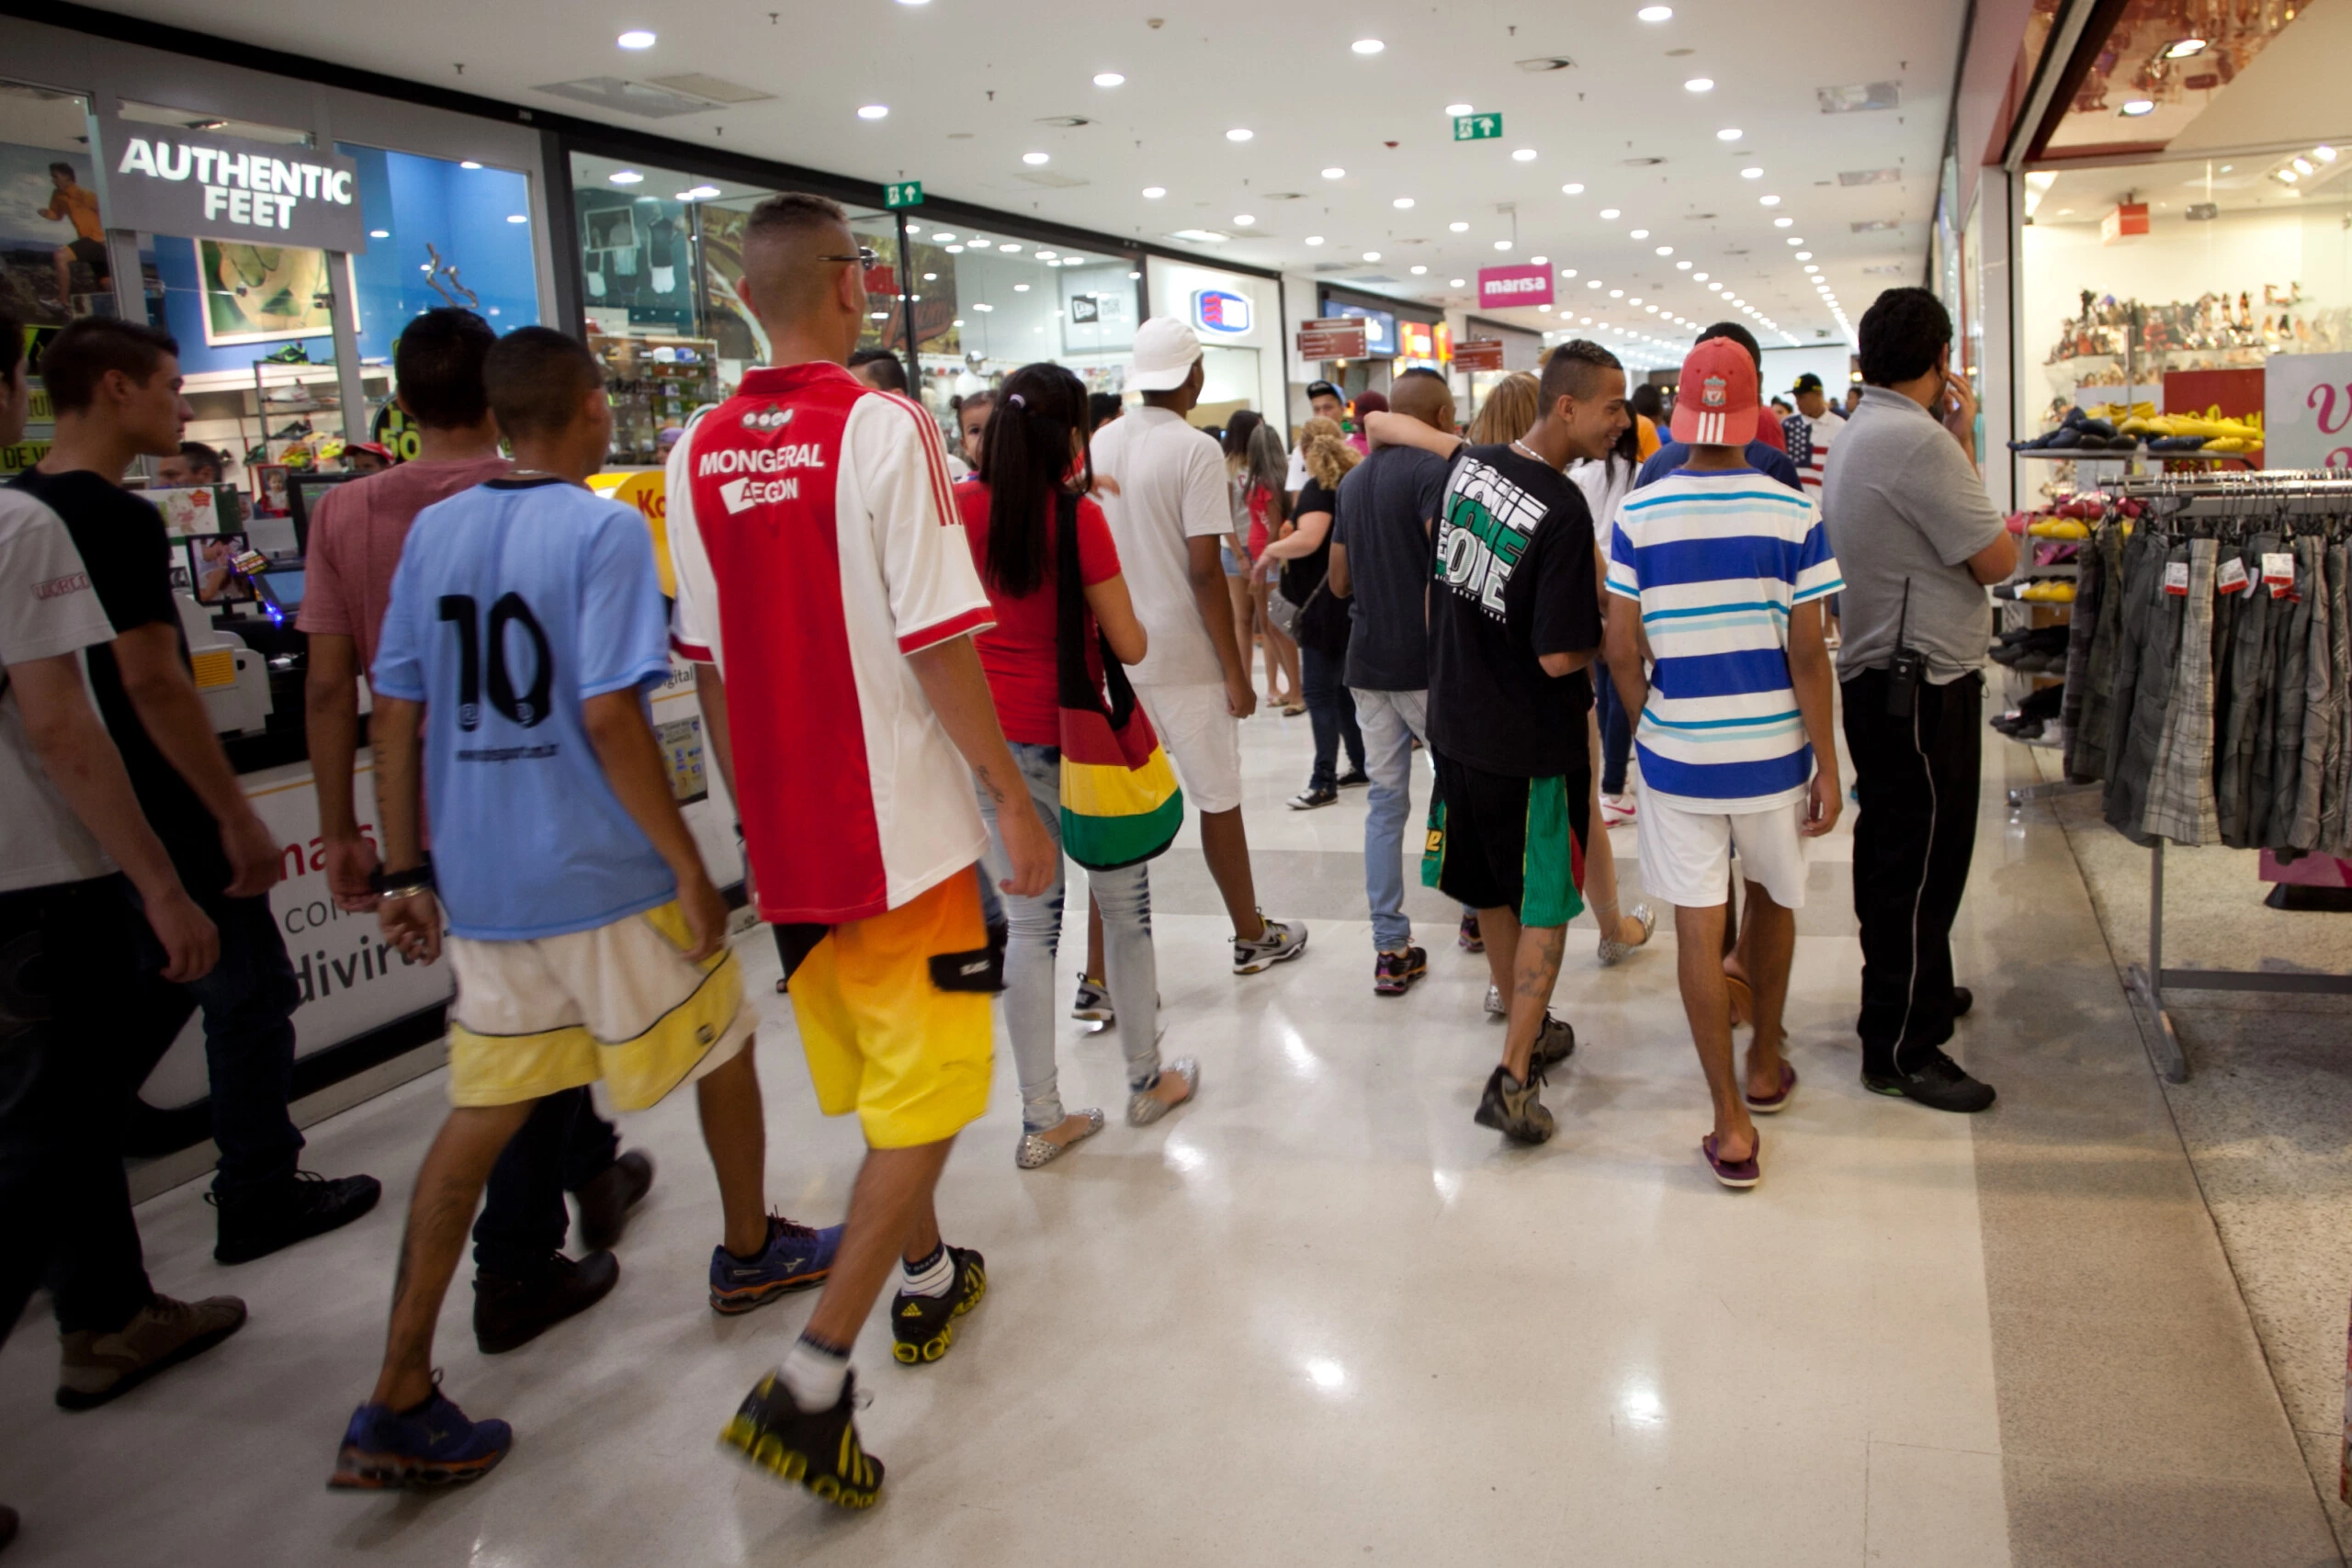 Participantes de "rolezinho" caminham pelo shopping Metrô Itaquera, zona leste de São Paulo (SP), em 2014. O encontro, marcado pelo Facebook, estava proibido mediante liminar da justiça. Foto: Bruno Poletti/Folhapress.